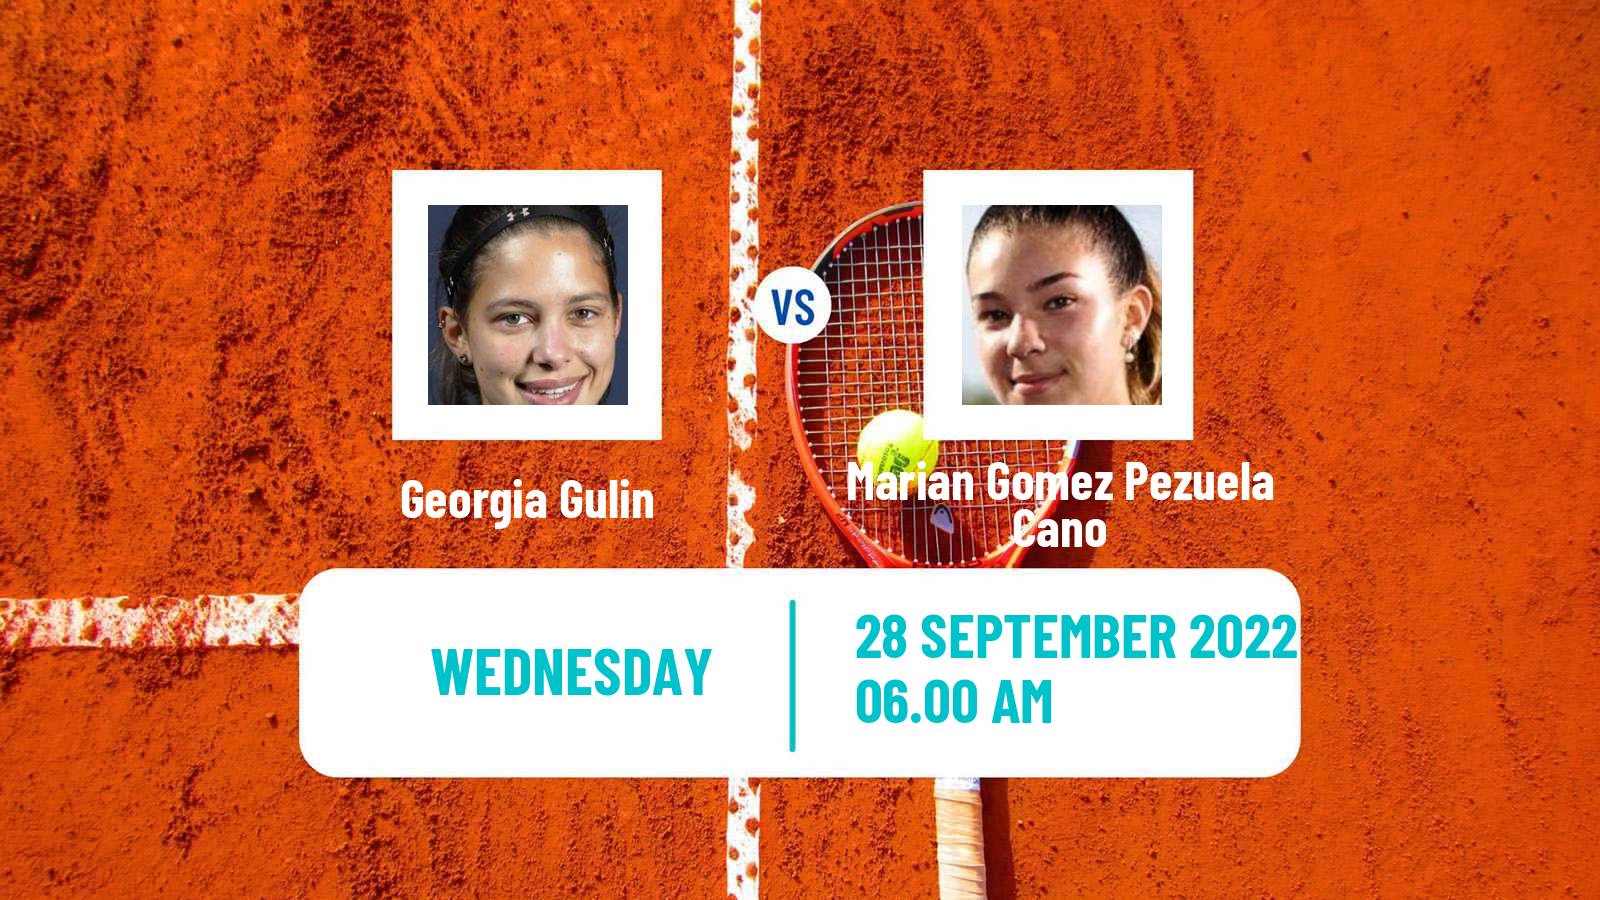 Tennis ITF Tournaments Georgia Gulin - Marian Gomez Pezuela Cano